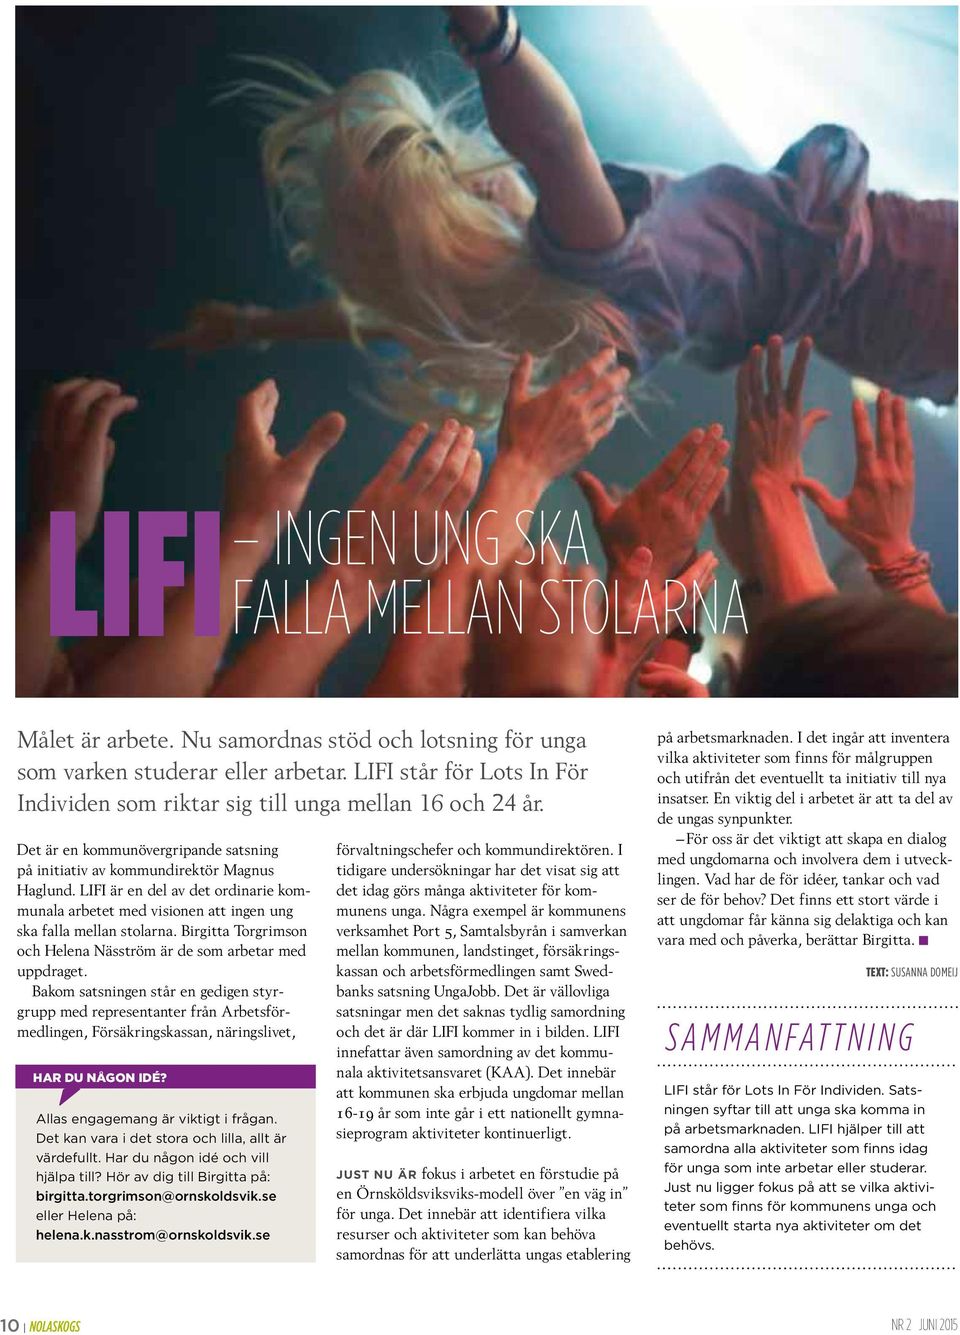 LIFI är en del av det ordinarie kommunala arbetet med visionen att ingen ung ska falla mellan stolarna. Birgitta Torgrimson och Helena Näsström är de som arbetar med uppdraget.